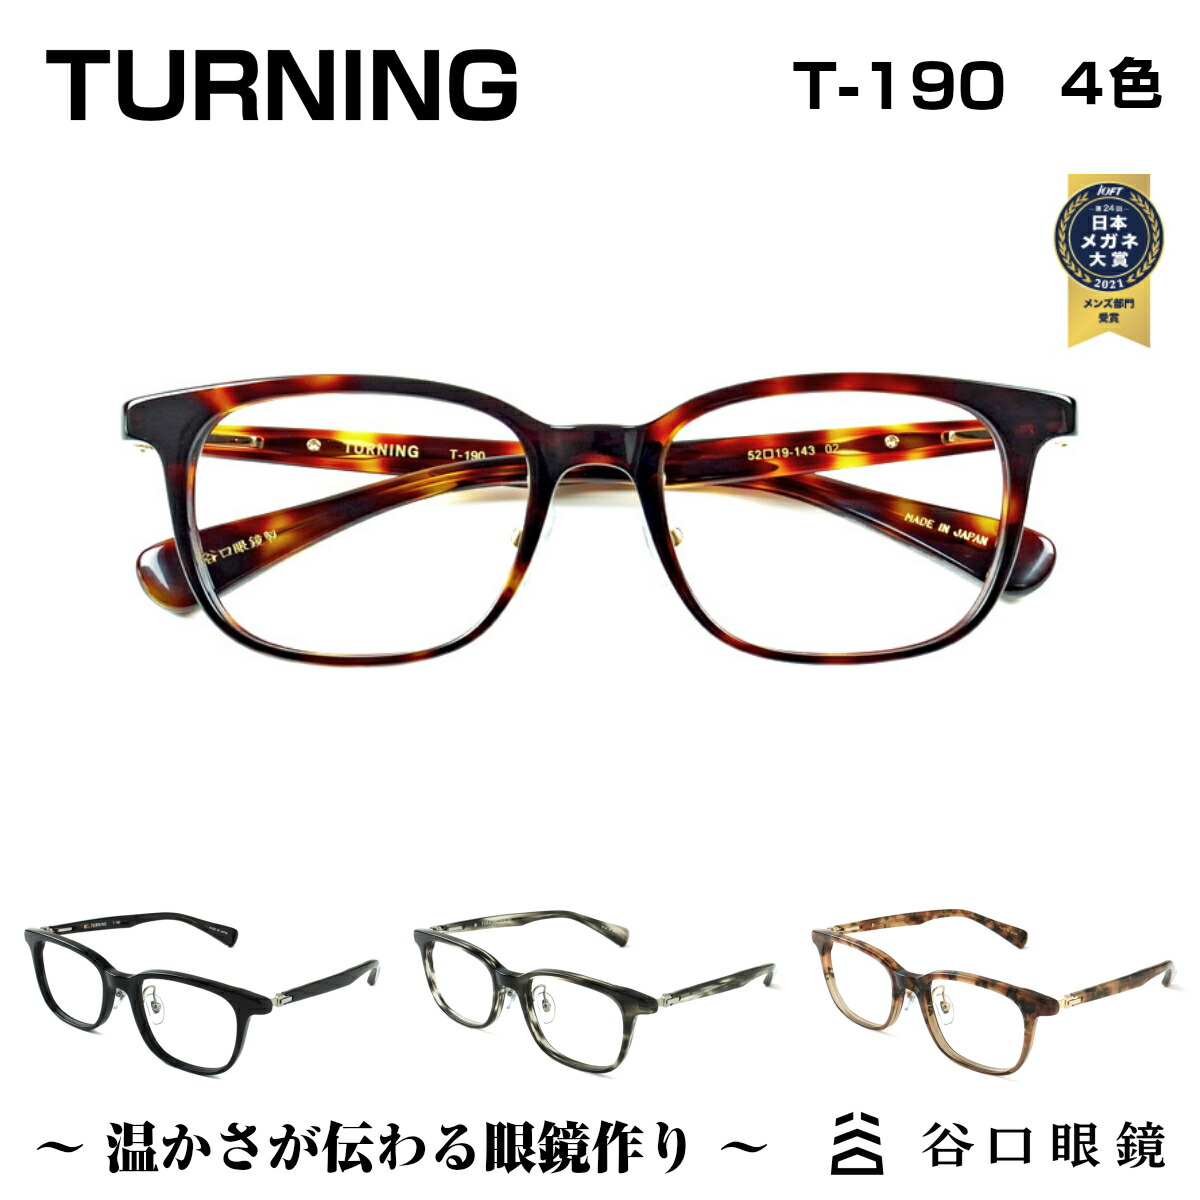 鯖江の職人が作る温かみのある眼鏡 TURNING ターニング 谷口眼鏡 T-190 4色1996年のTURNING立ち上げから一番大切に追求してきた “掛け心地”にこだわった眼鏡です 使い勝手の良い 4色 メガネ フレーム 定番の人気シリーズPOINT(ポイント)入荷 度付き ユニセックス SABAE 男性 軽い 日本製 セル 鯖江 女性 シンプル 国産 軽量